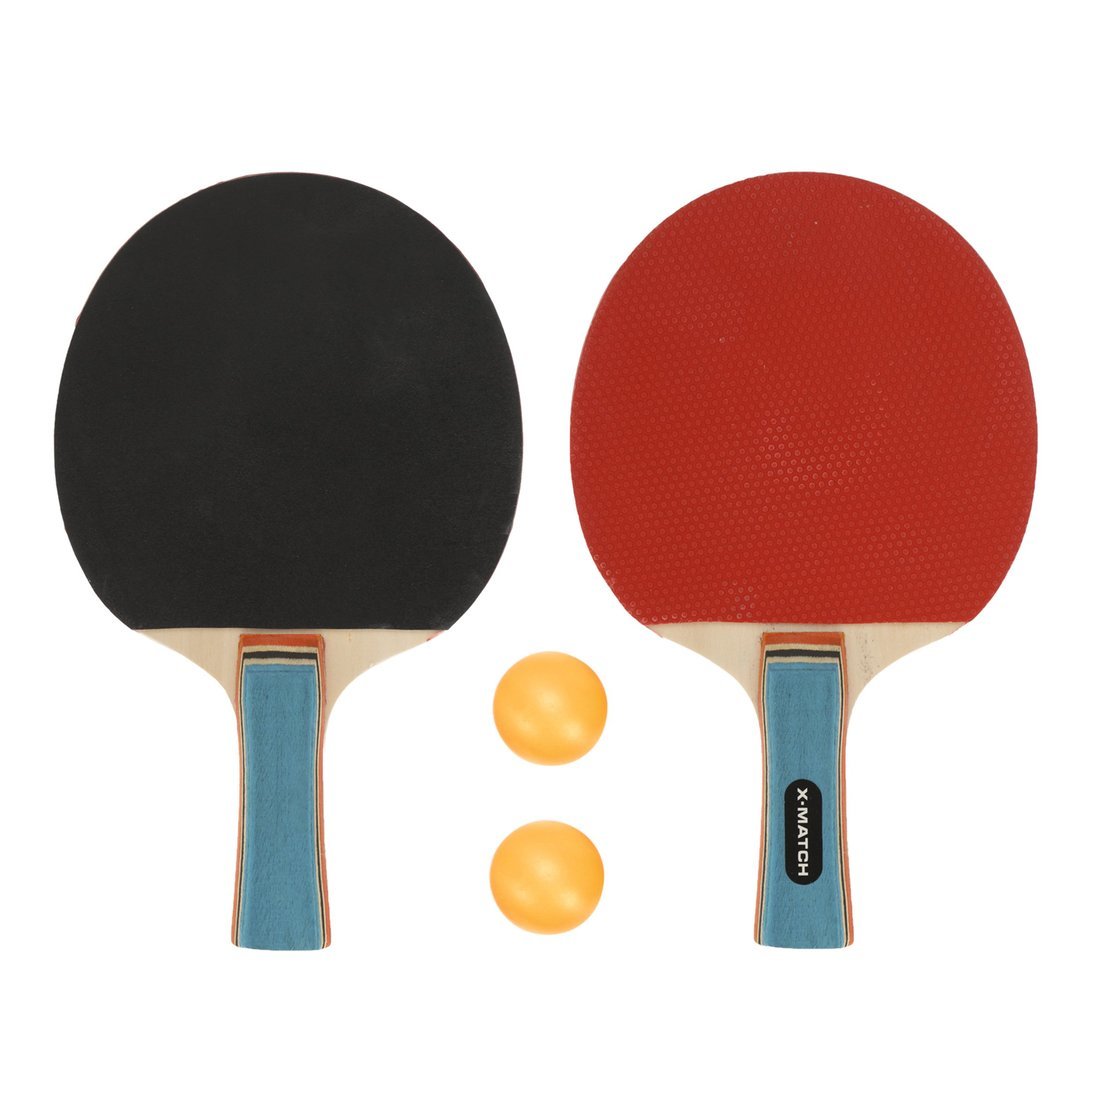 Набор для настольного тенниса X-Match (2 ракетки 8 мм., 2 шарика) 636271 ракетка для настольного тенниса roxel hobby start прямая